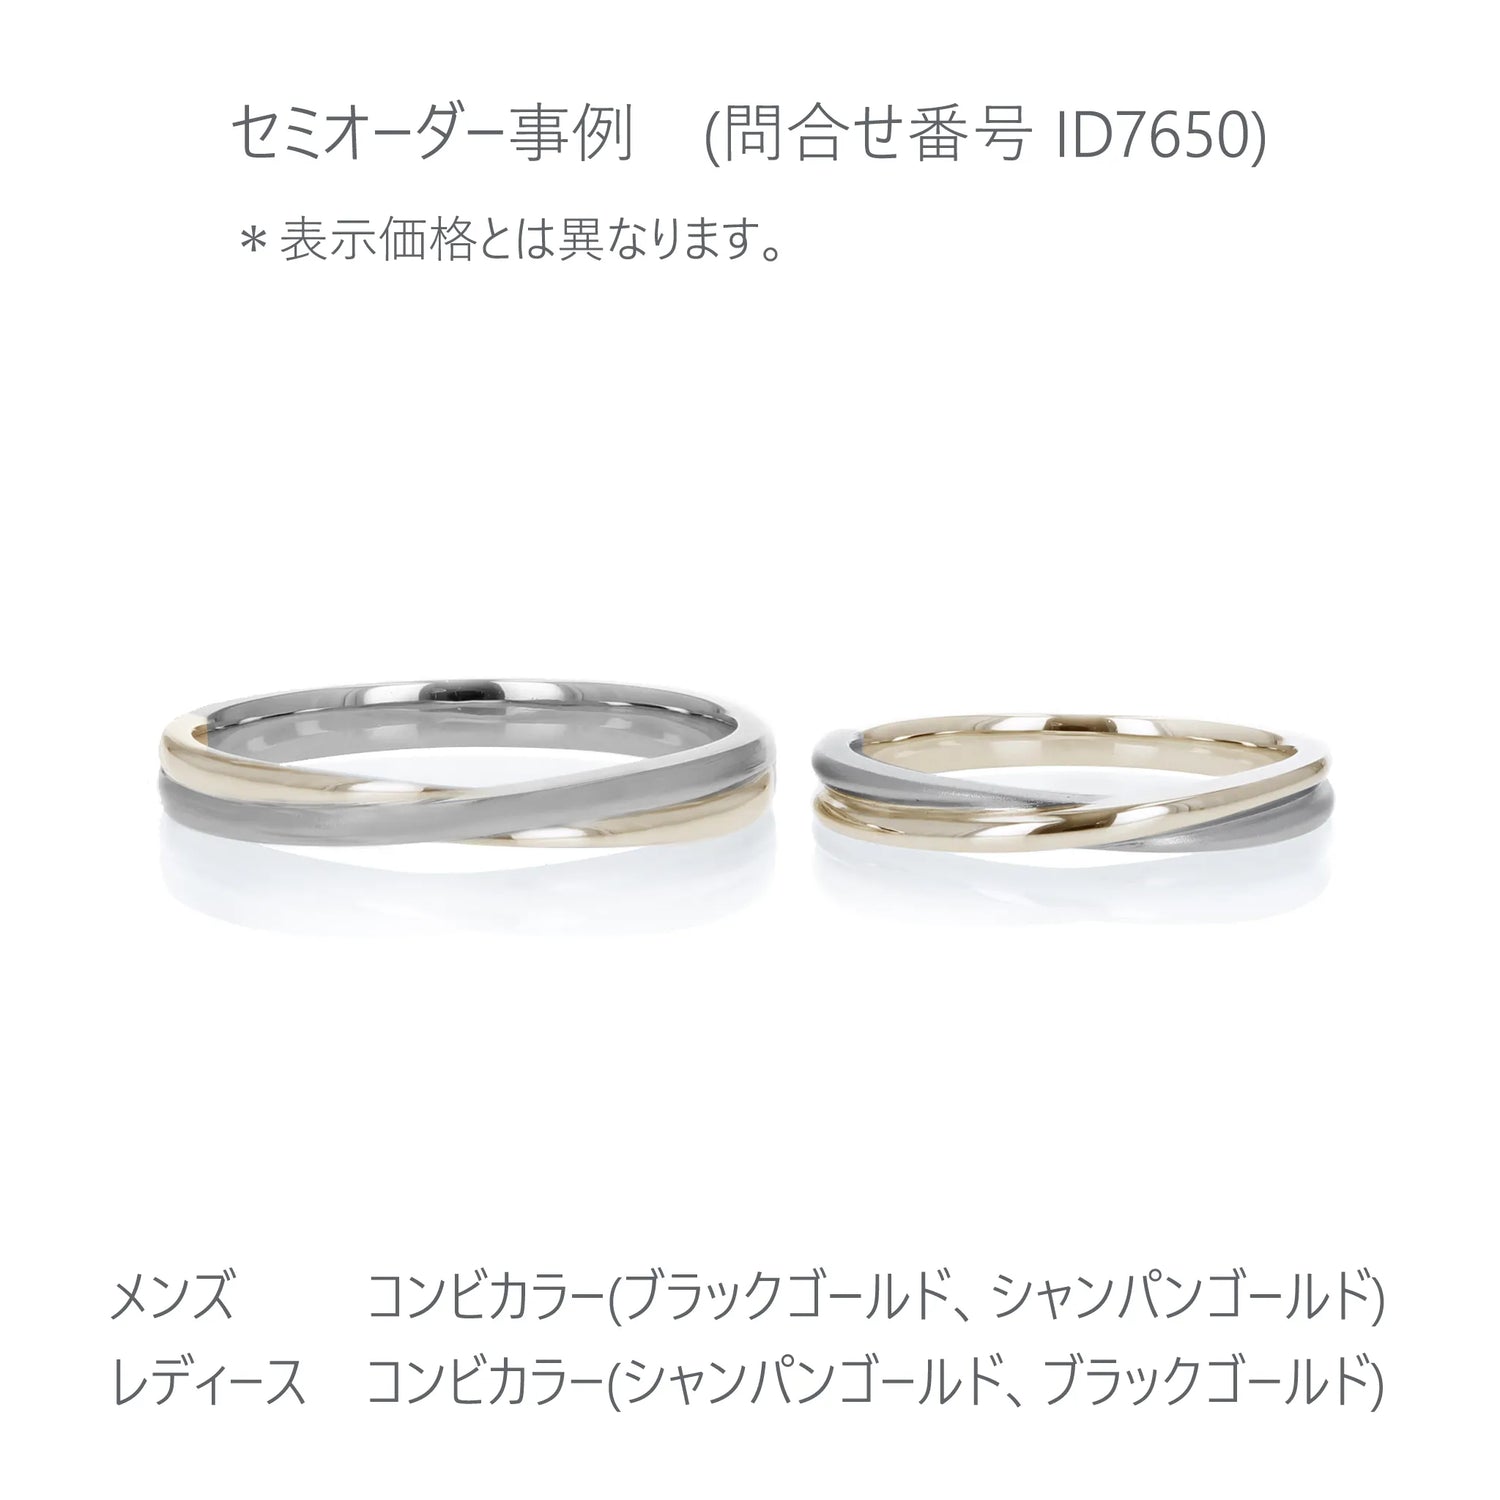 Crossing 光沢とつや消しで表現した結婚指輪 ブラックゴールド、シャンパンゴールド